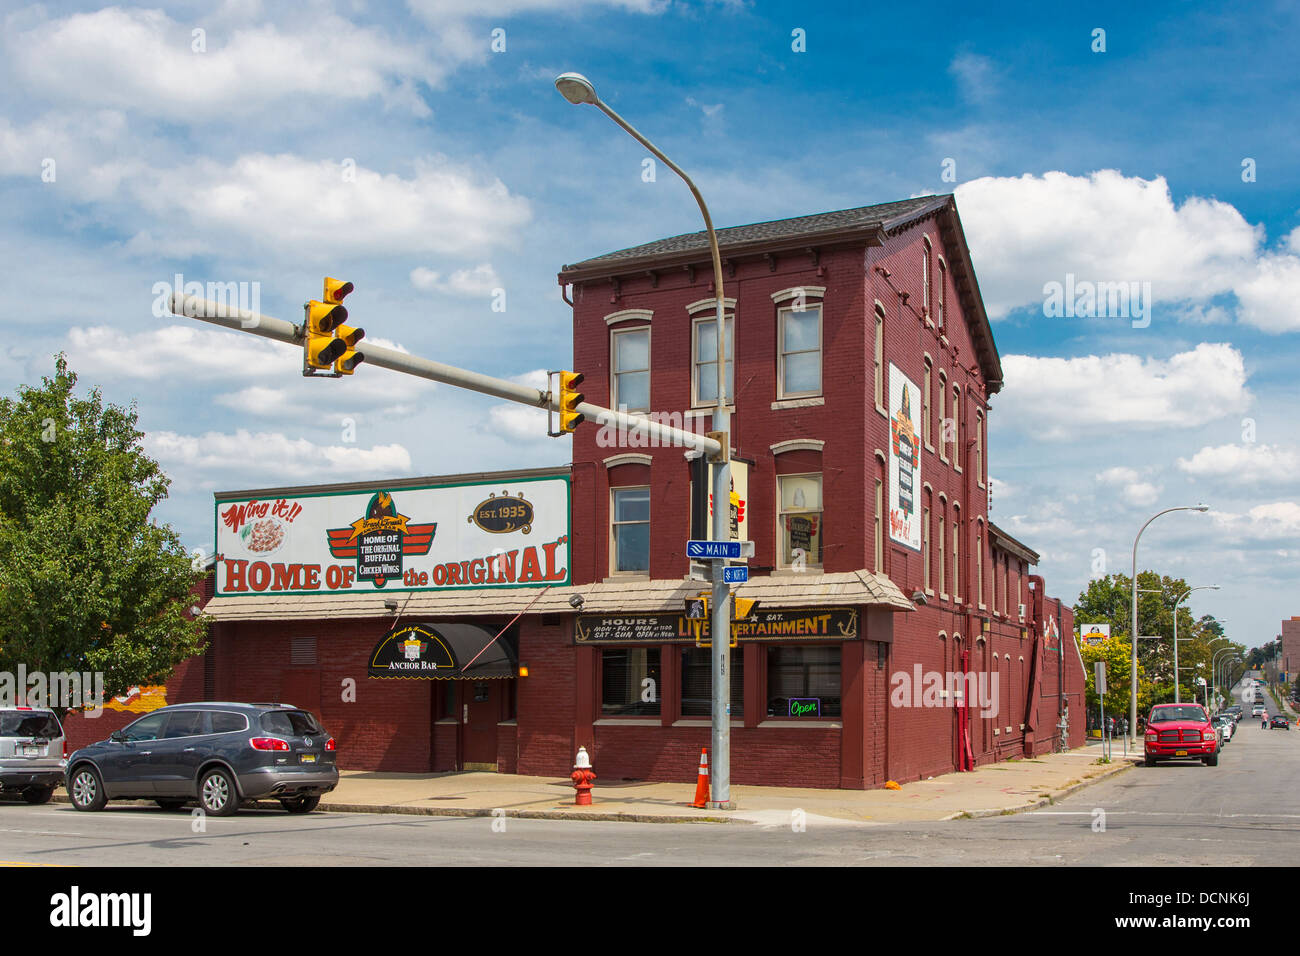 L'Anchor Bar, accueil d'ailes de poulet dans la ville de Buffalo, New York, United States Banque D'Images